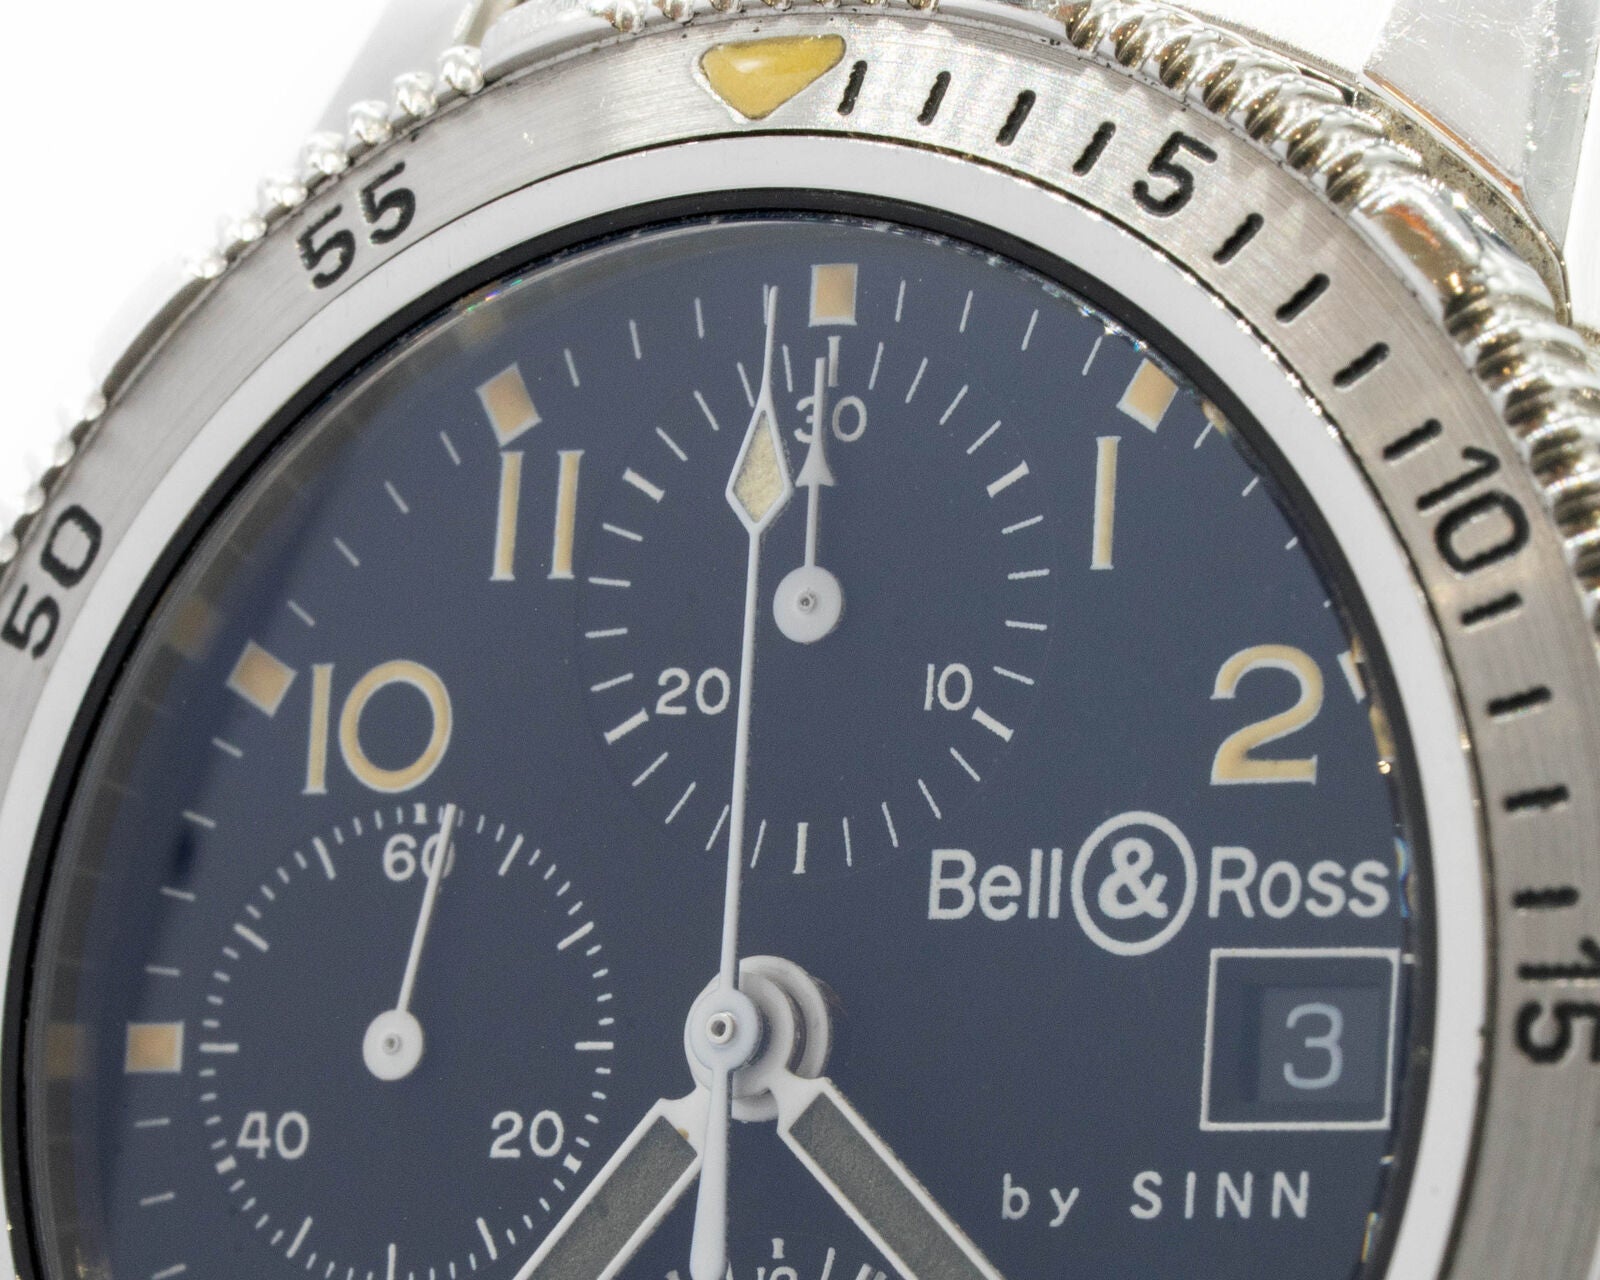 Close-up of the Bell & Rossby SINN logo